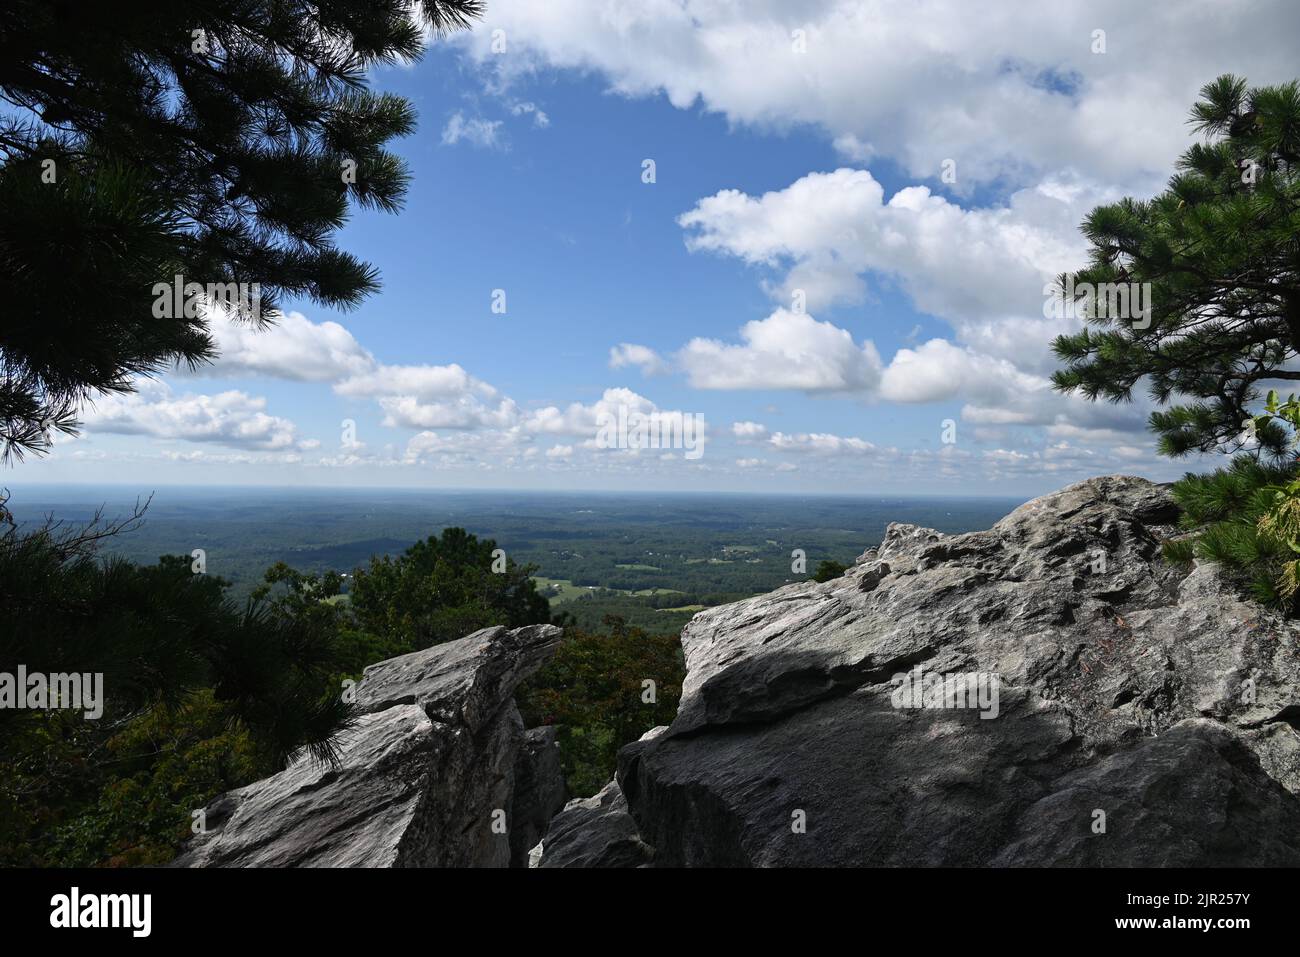 Si affaccia a sud sulla regione del Piemonte del North Carolina dallo sperone roccioso presso il Wolf Rock Overlook nell'Hanging Rock state Park. Foto Stock